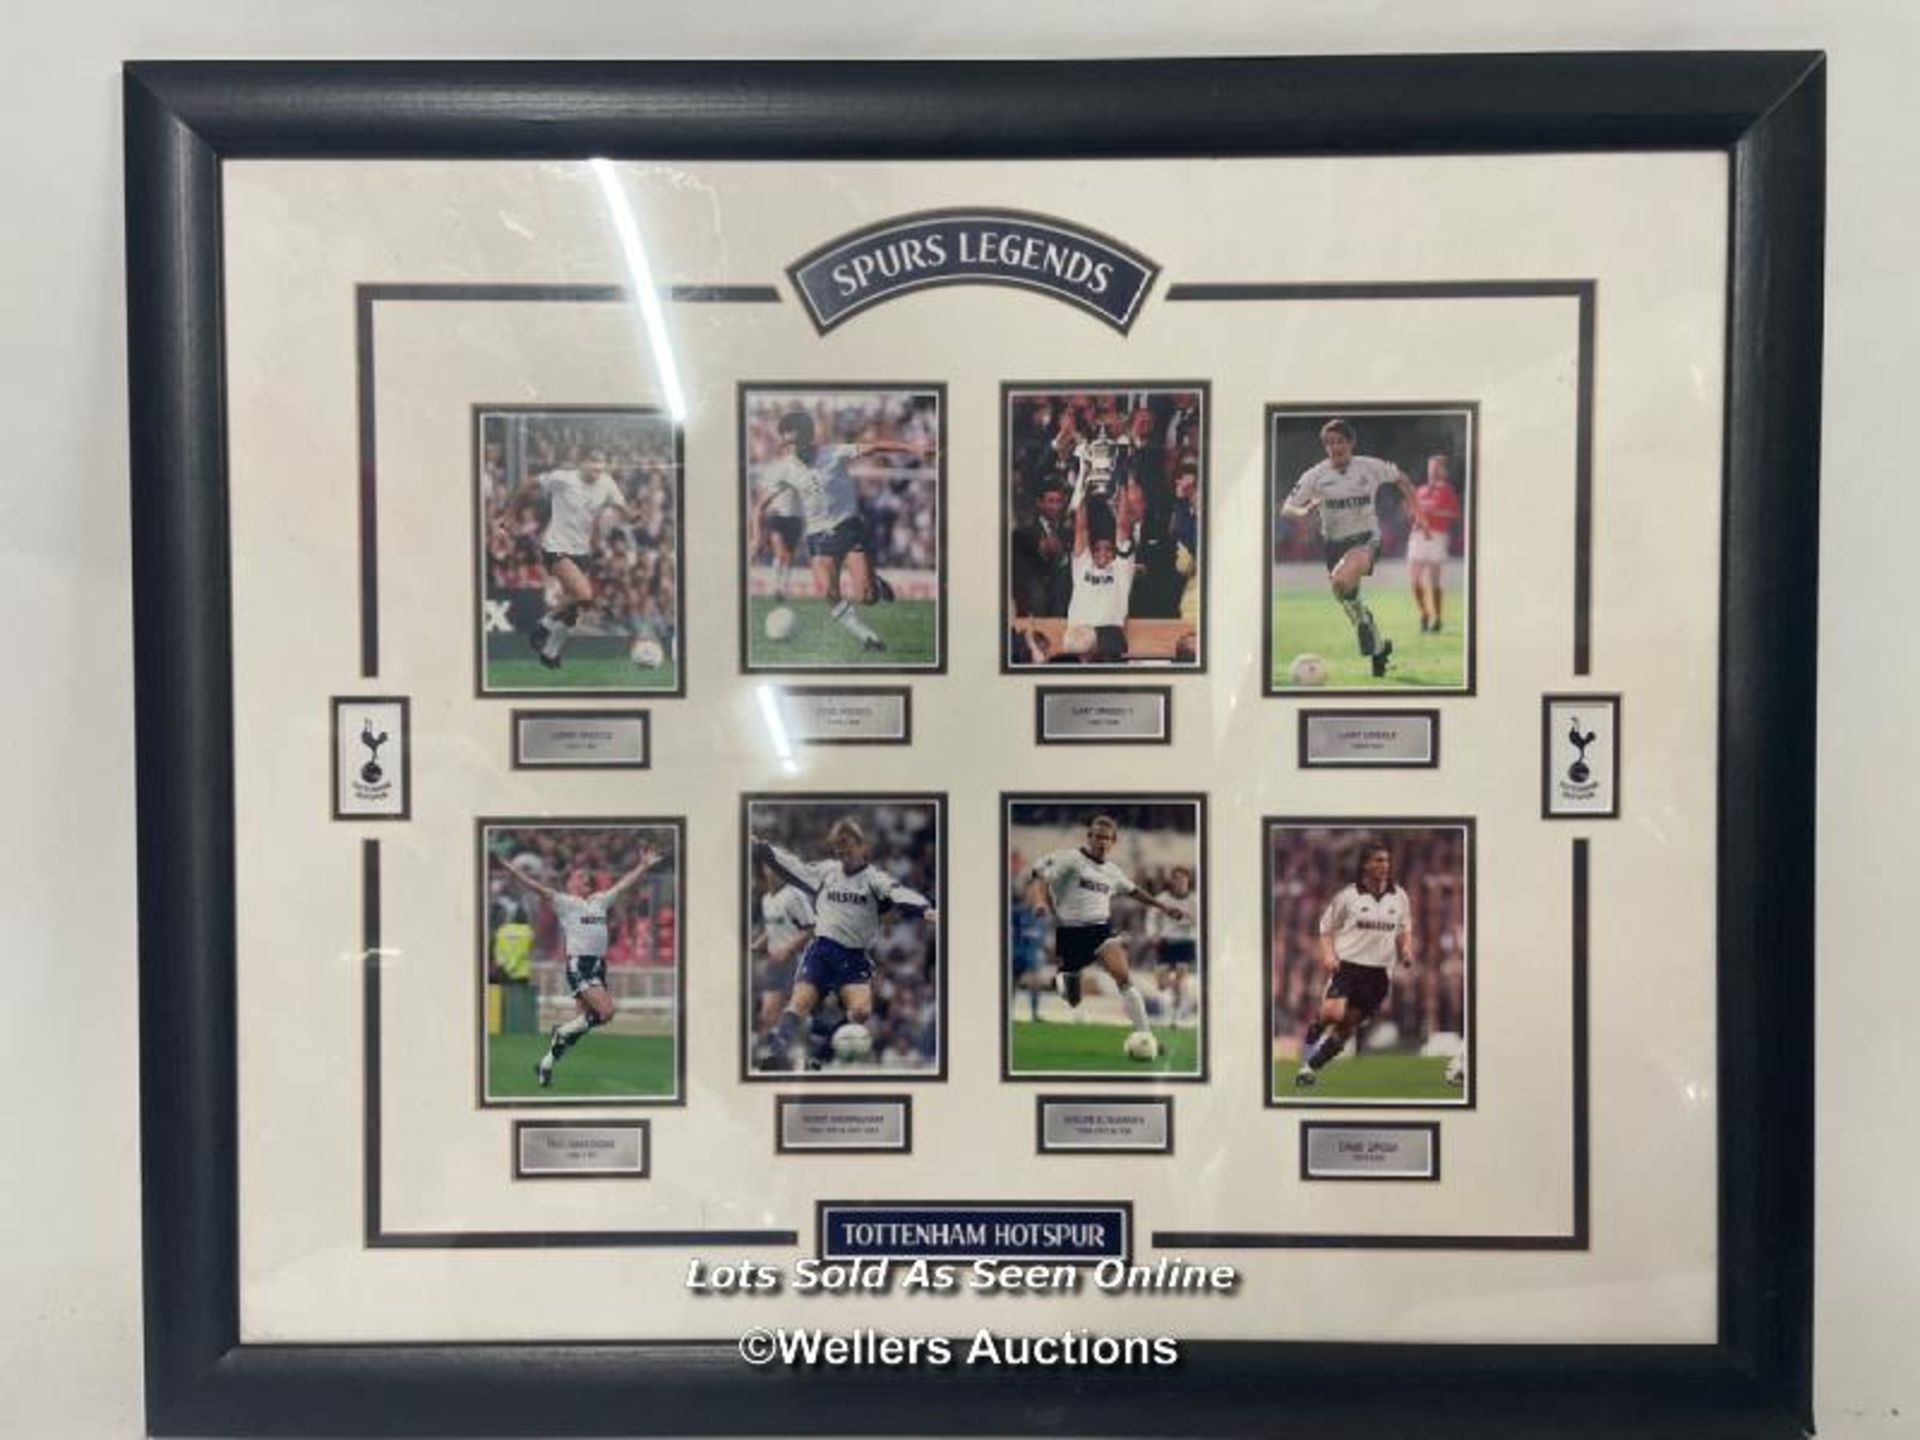 Tottenham Hotspur "Legends" framed photos